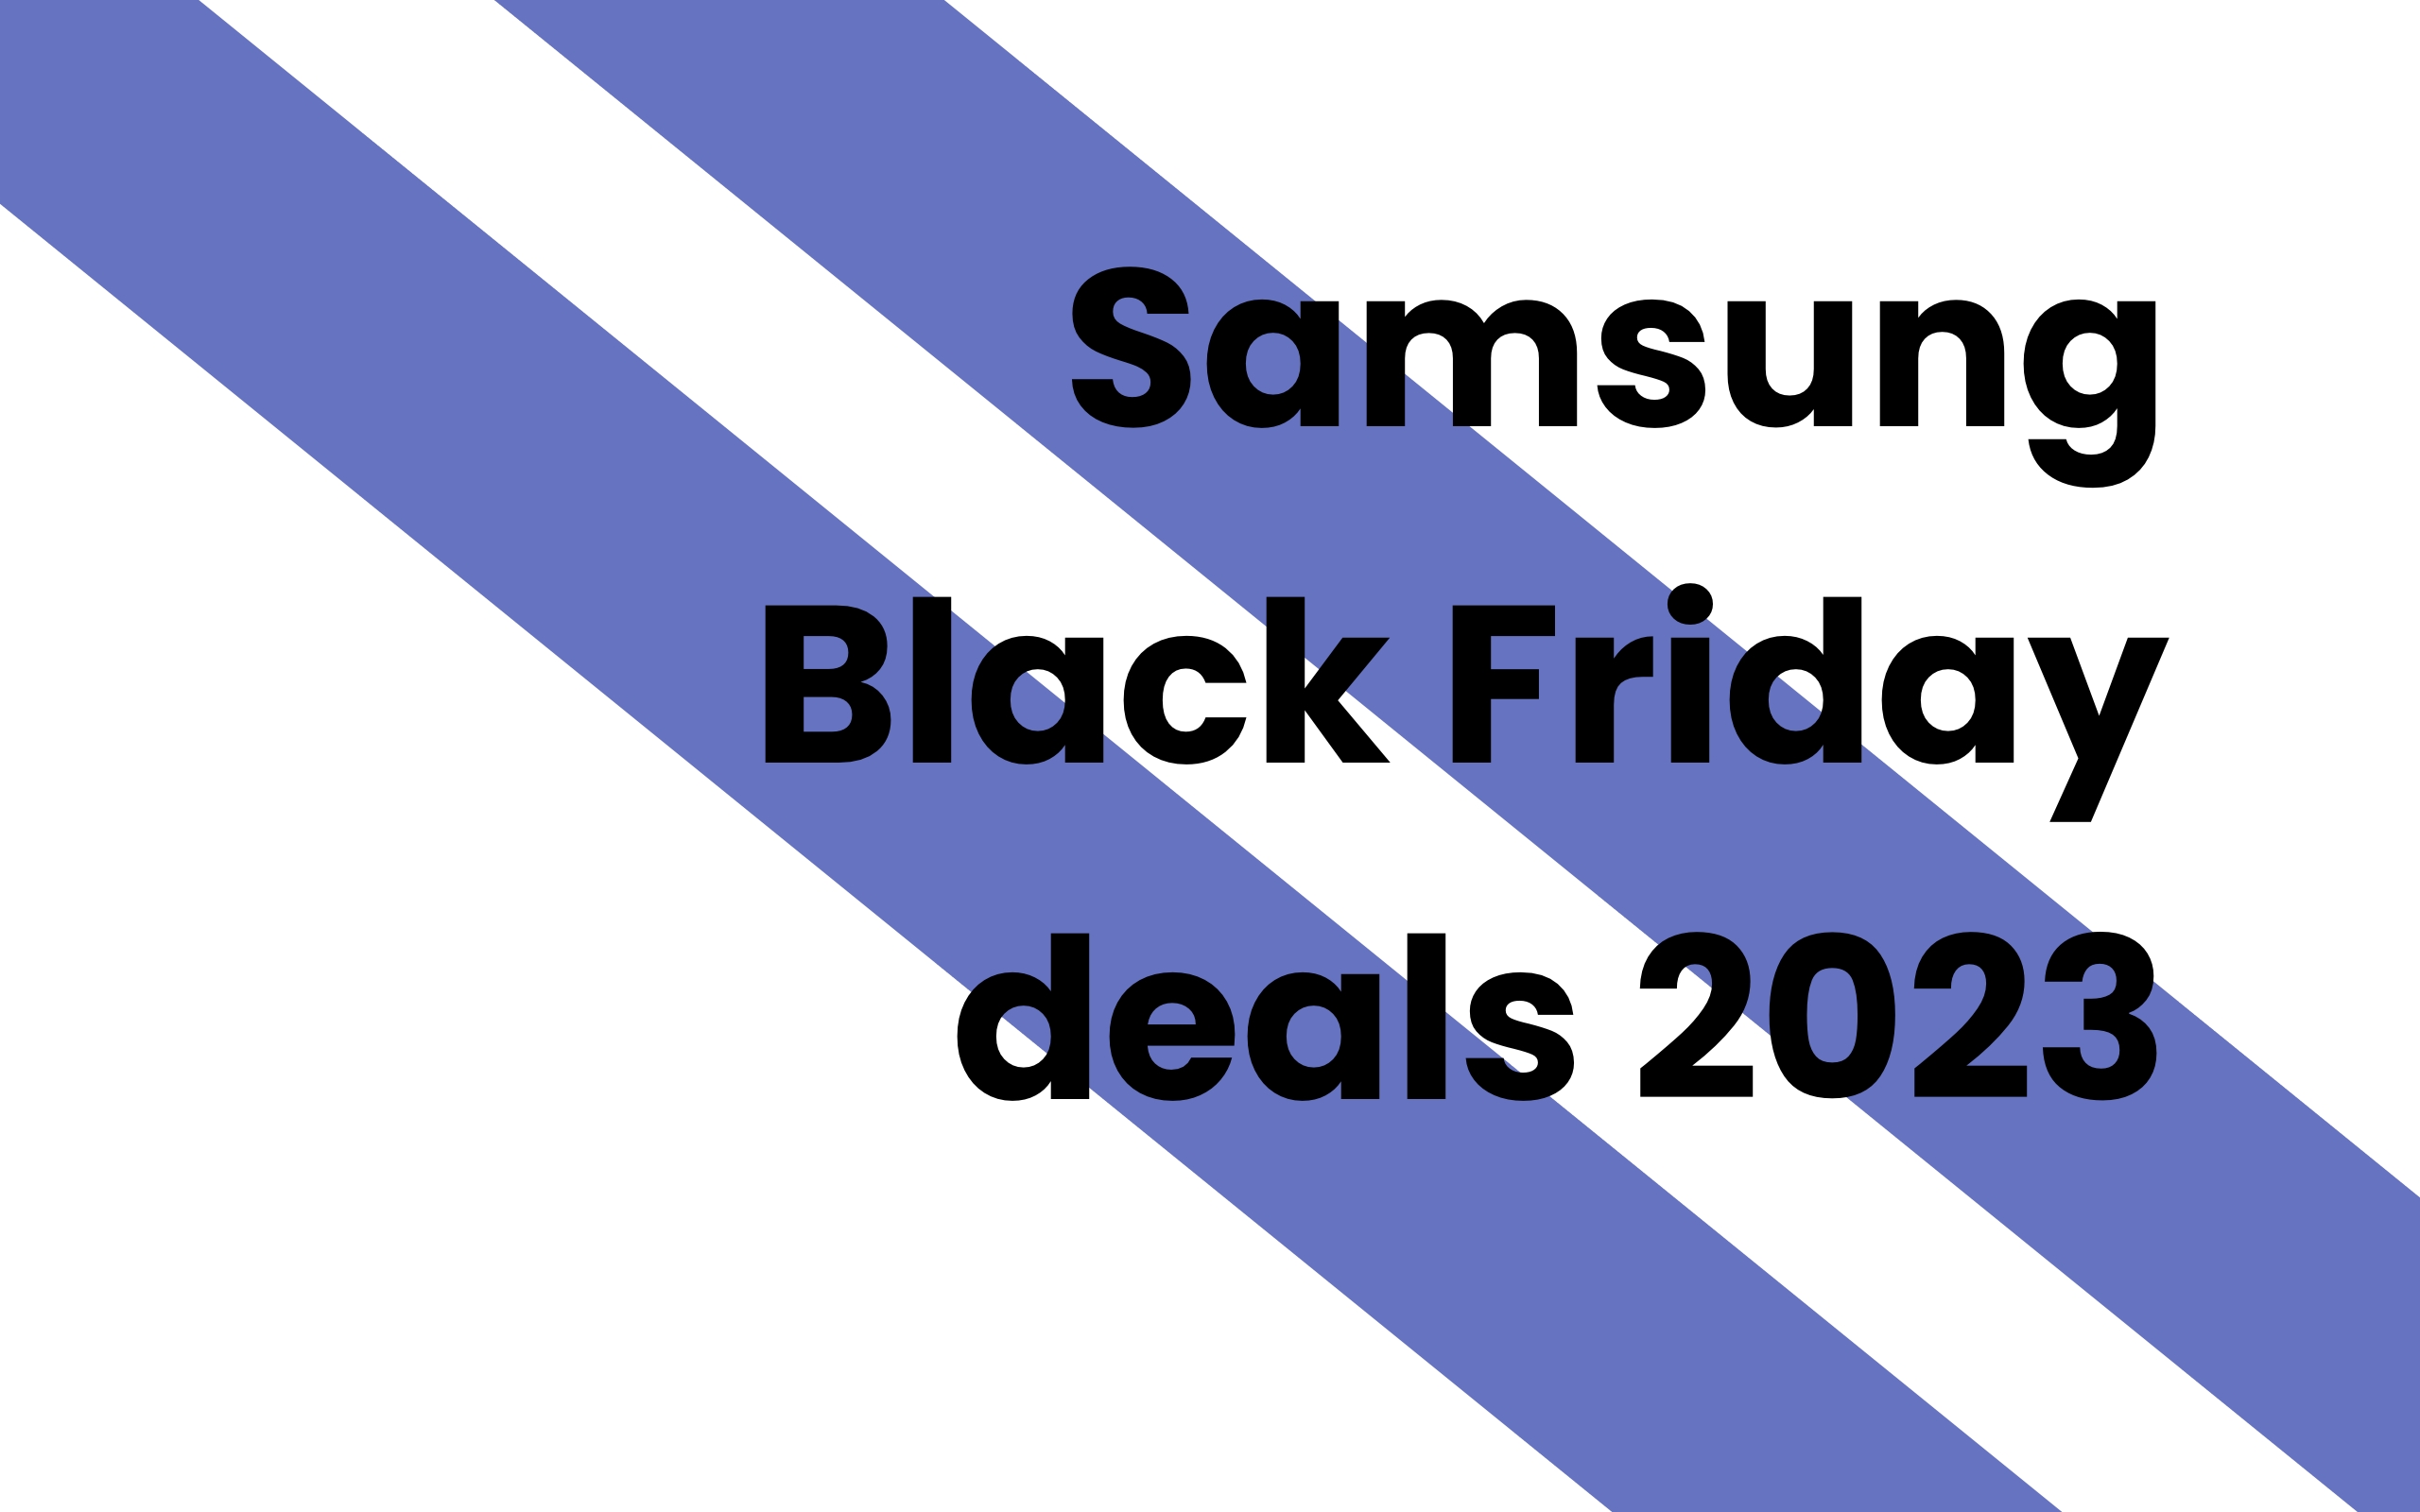 Samsung Black Friday